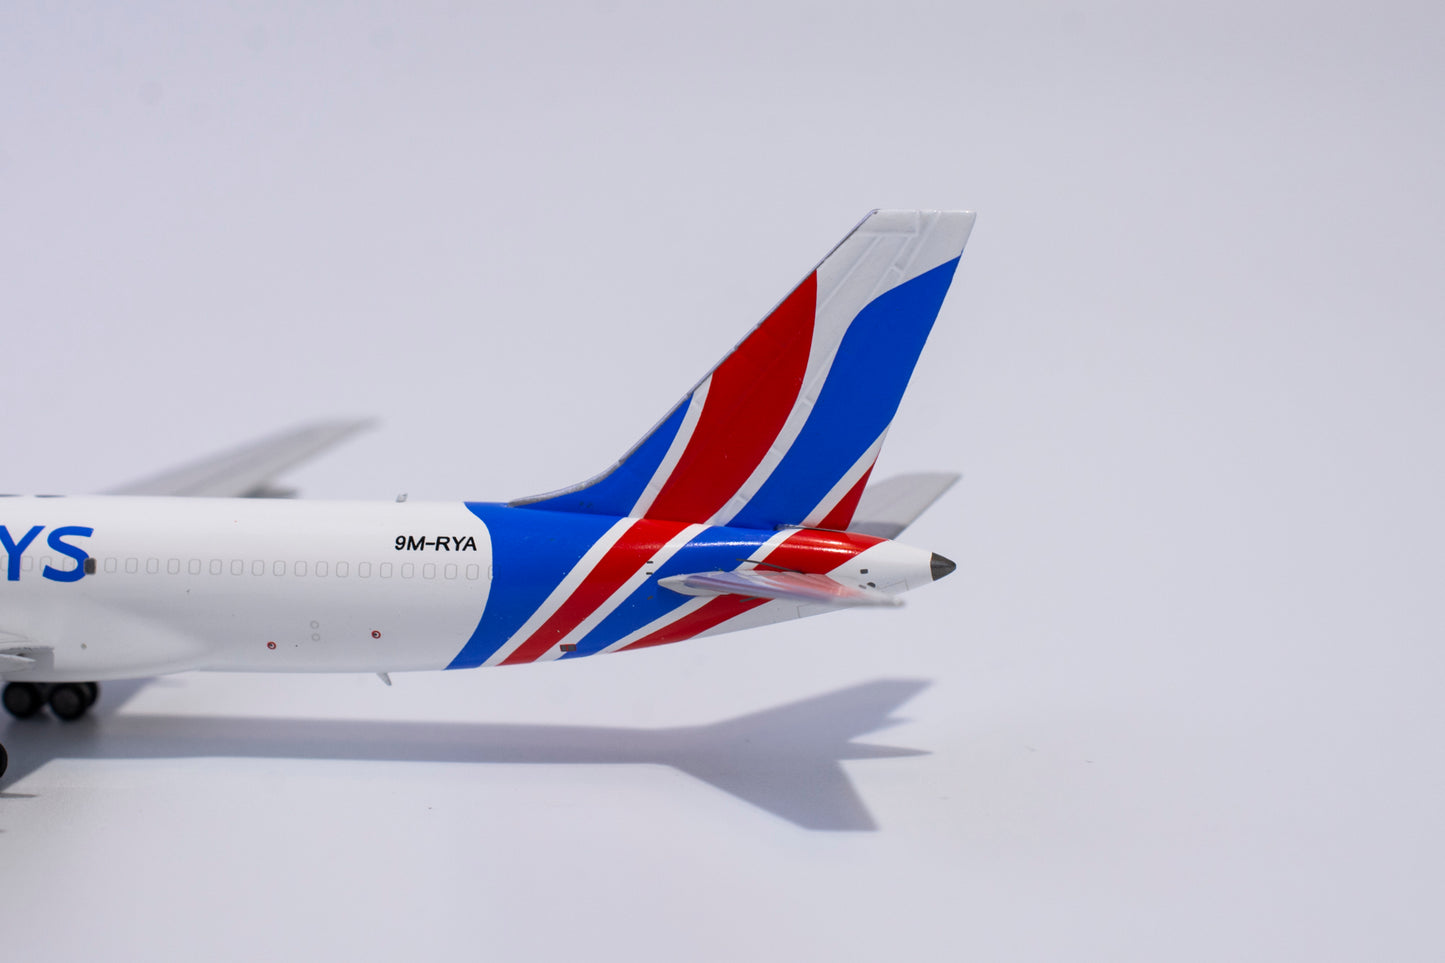 1:400 NG Models Raya Airways Boeing 757-200PCF 9M-RYA NG53163